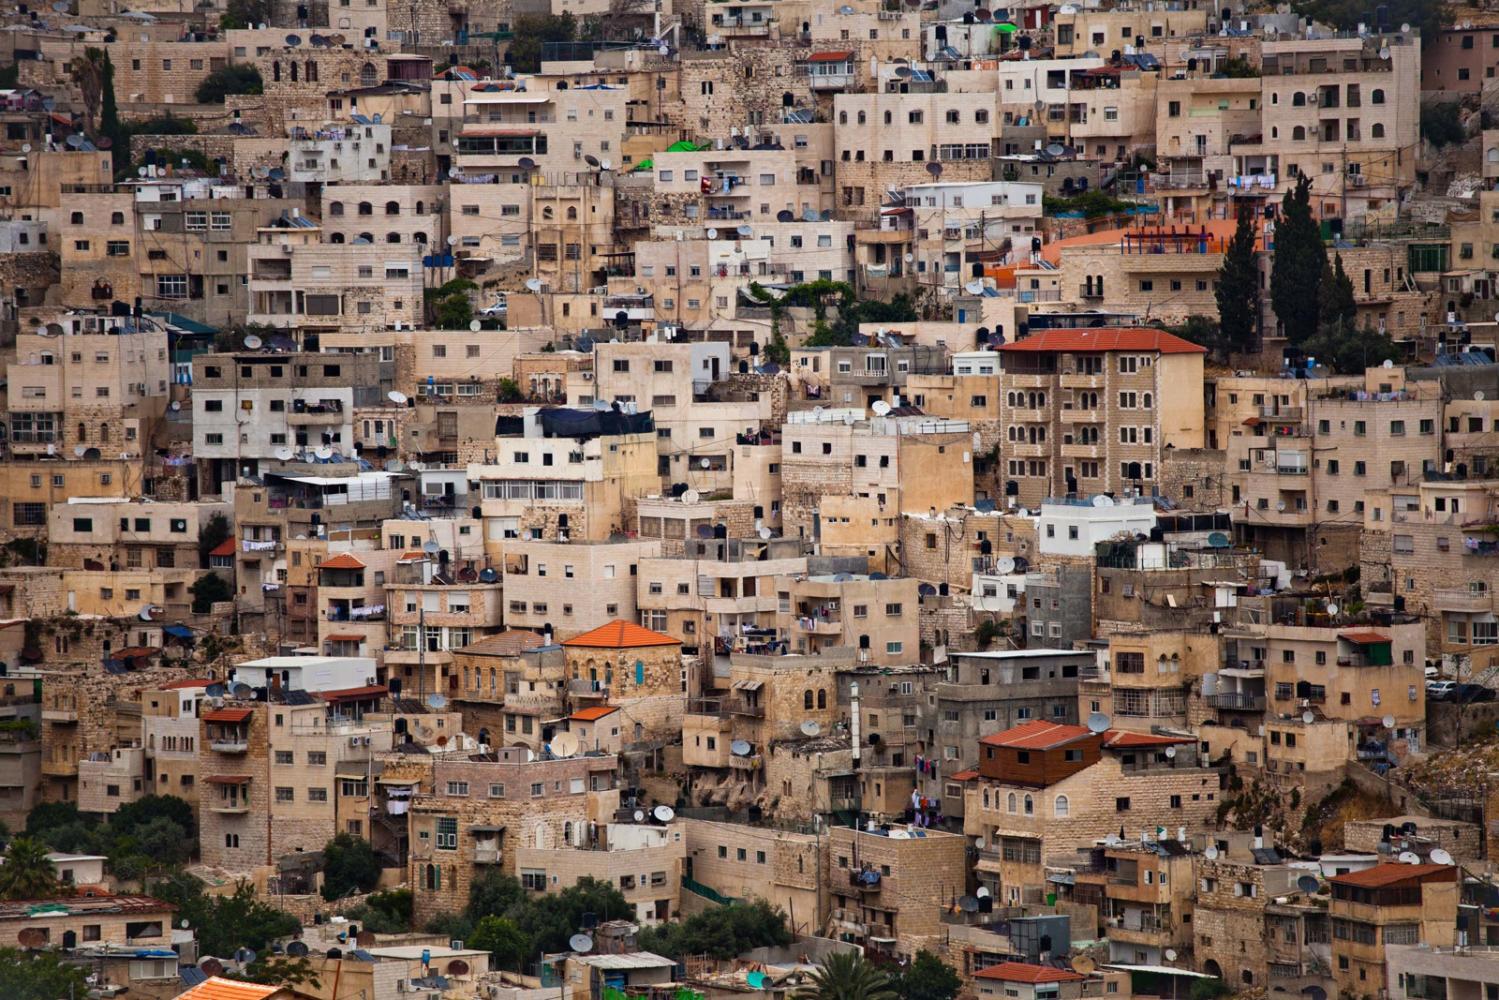 West Bank, Palestine